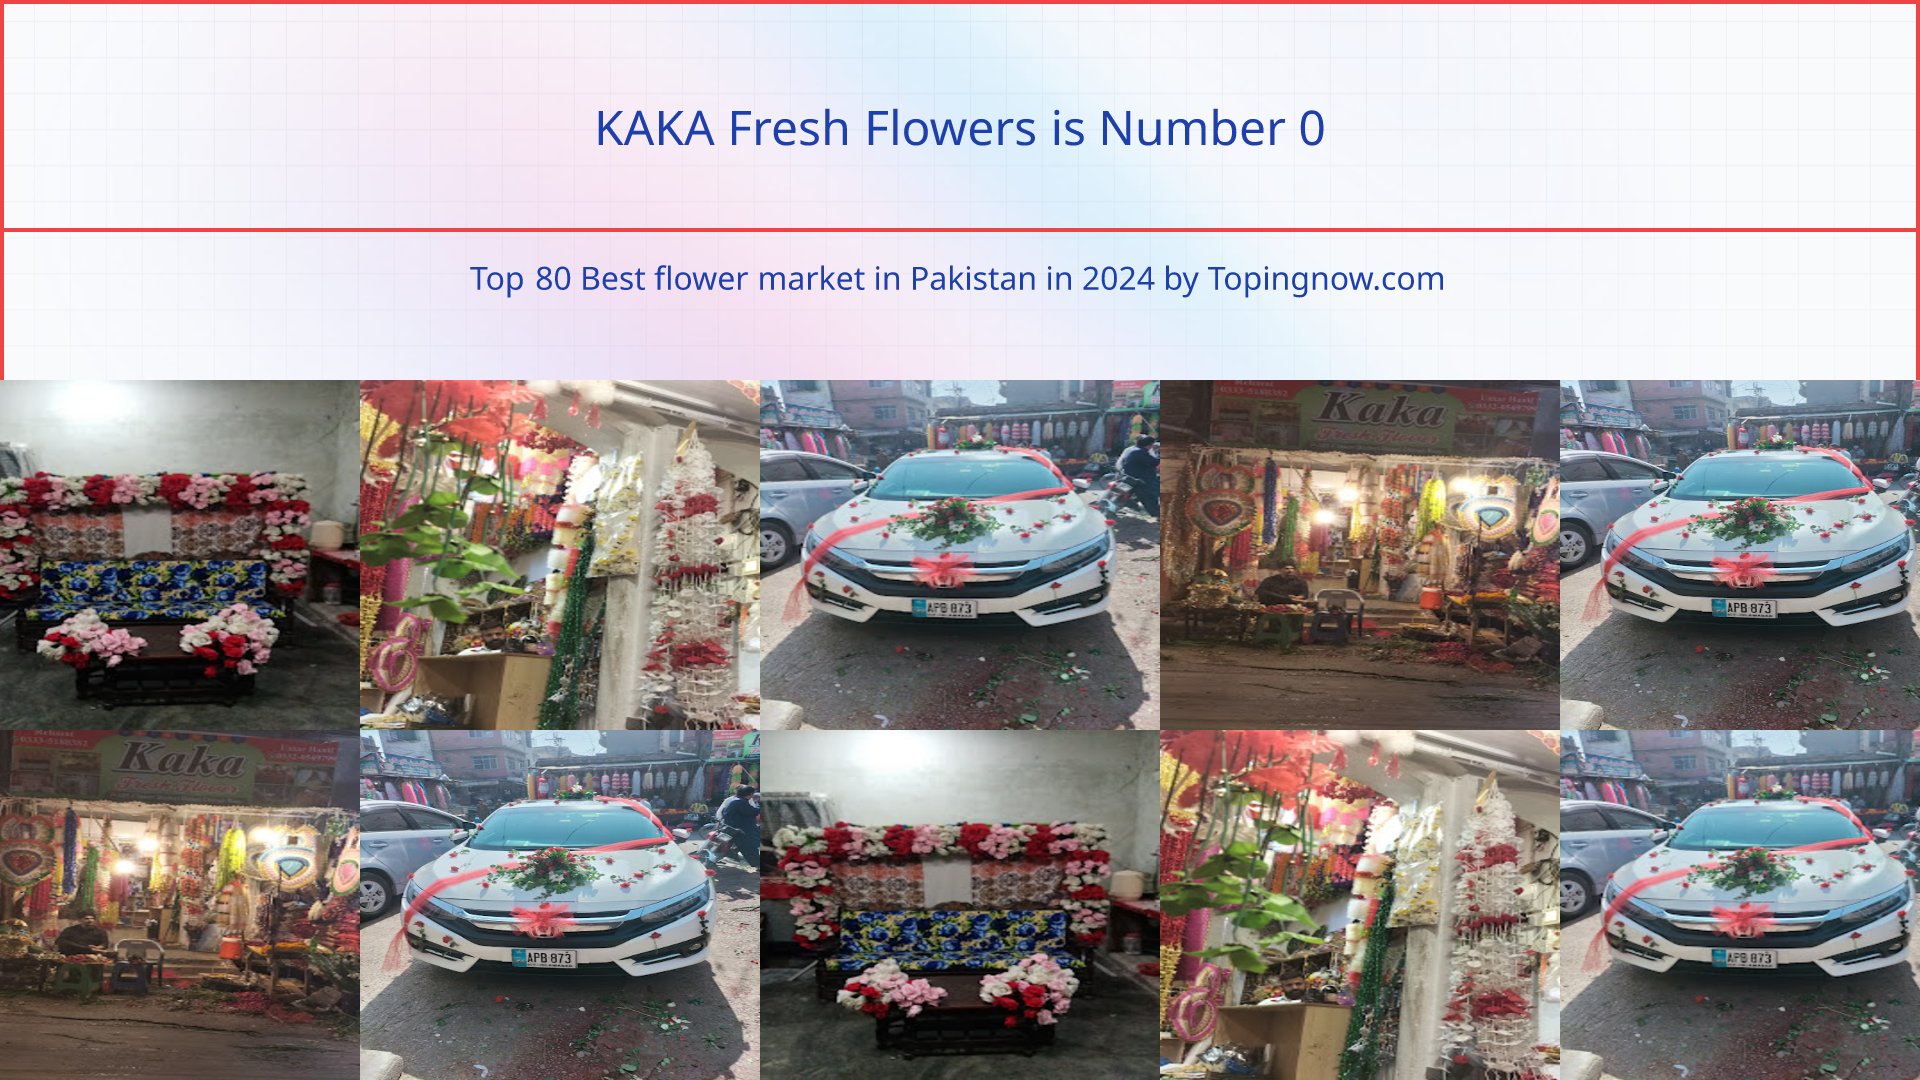 KAKA Fresh Flowers: Top 80 Best flower market in Pakistan in 2024